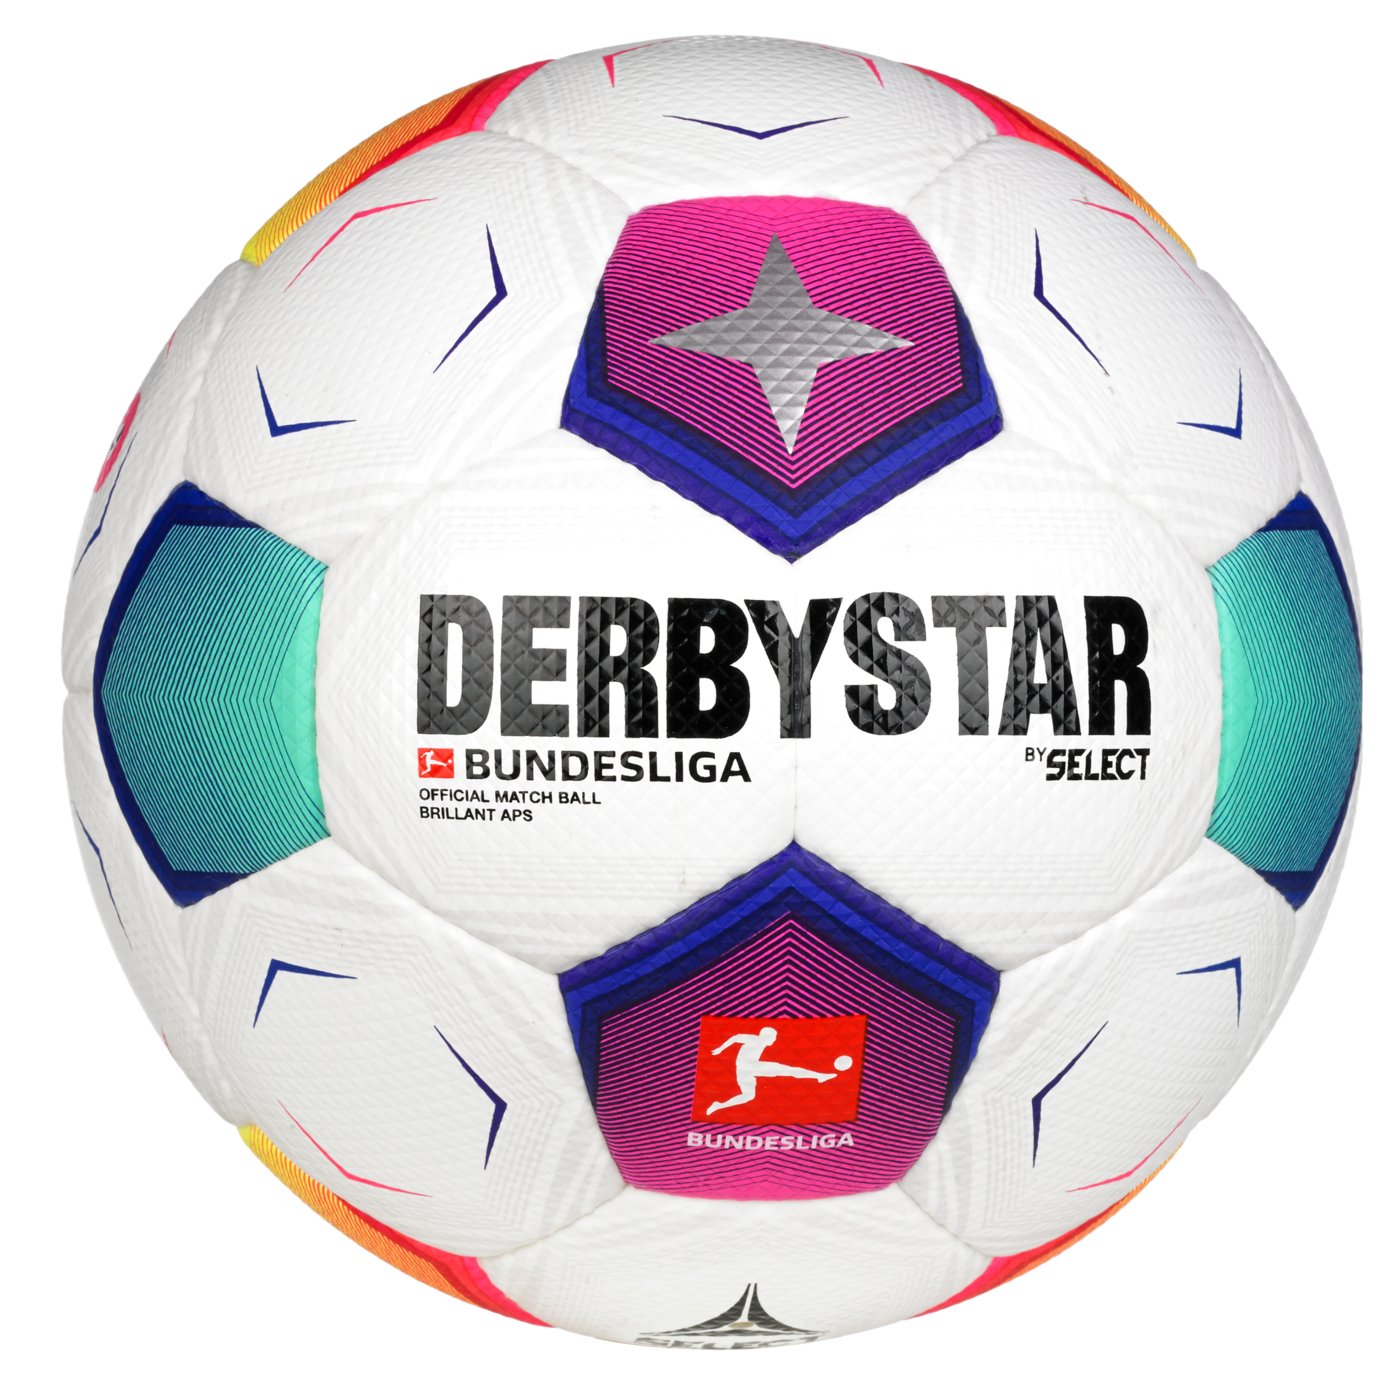 Мяч футбольный SELECT DERBYSTAR Bundesliga Brillant APS v23 (634) бело/син/фиолет, 5, 5